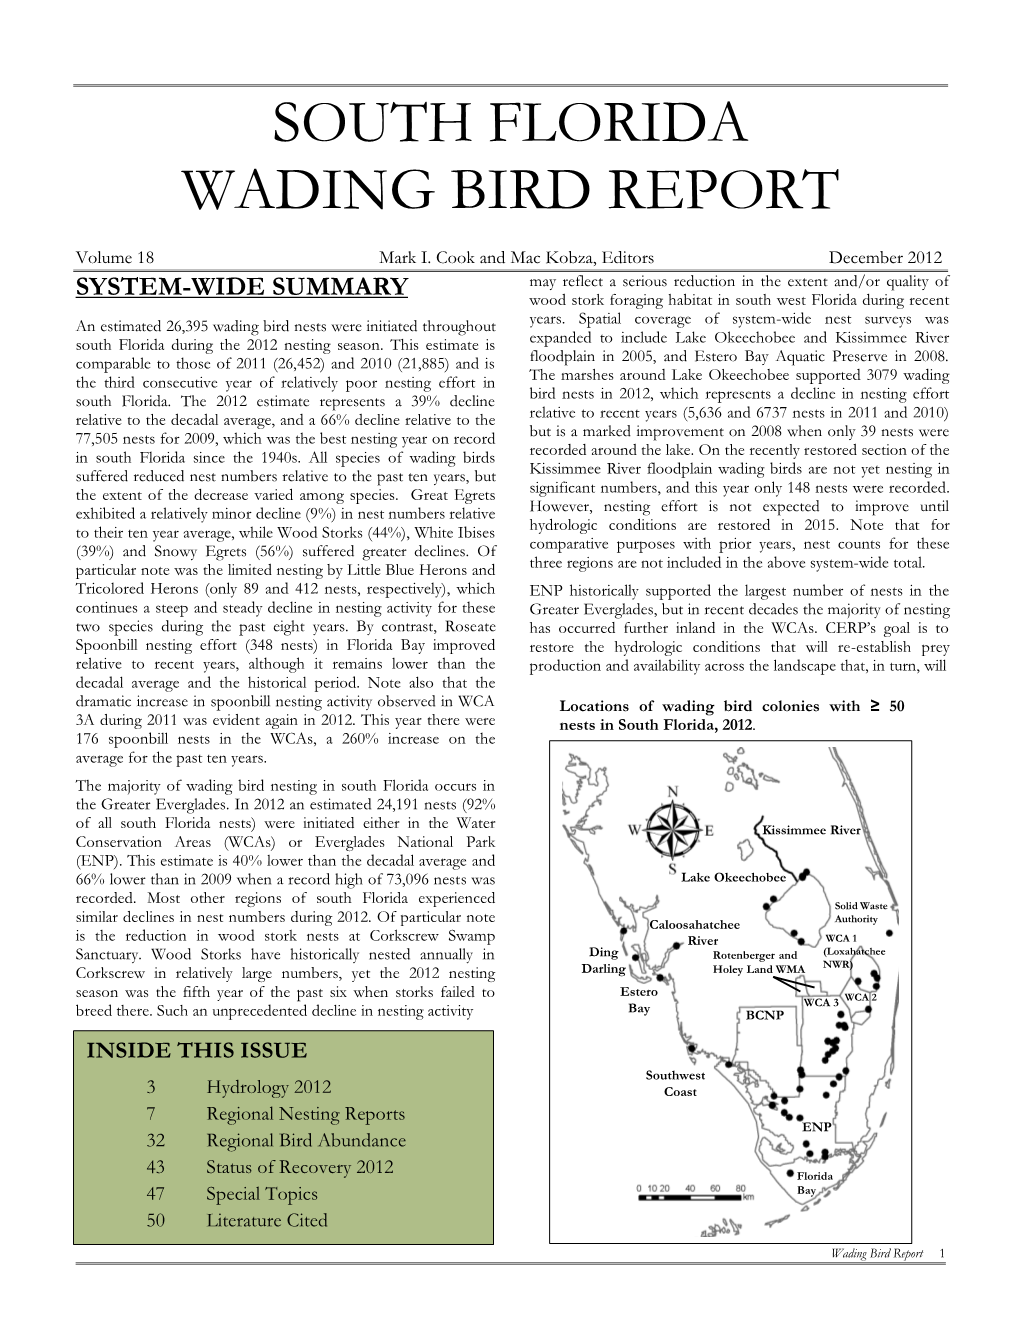 South Florida Wading Bird Report 2012